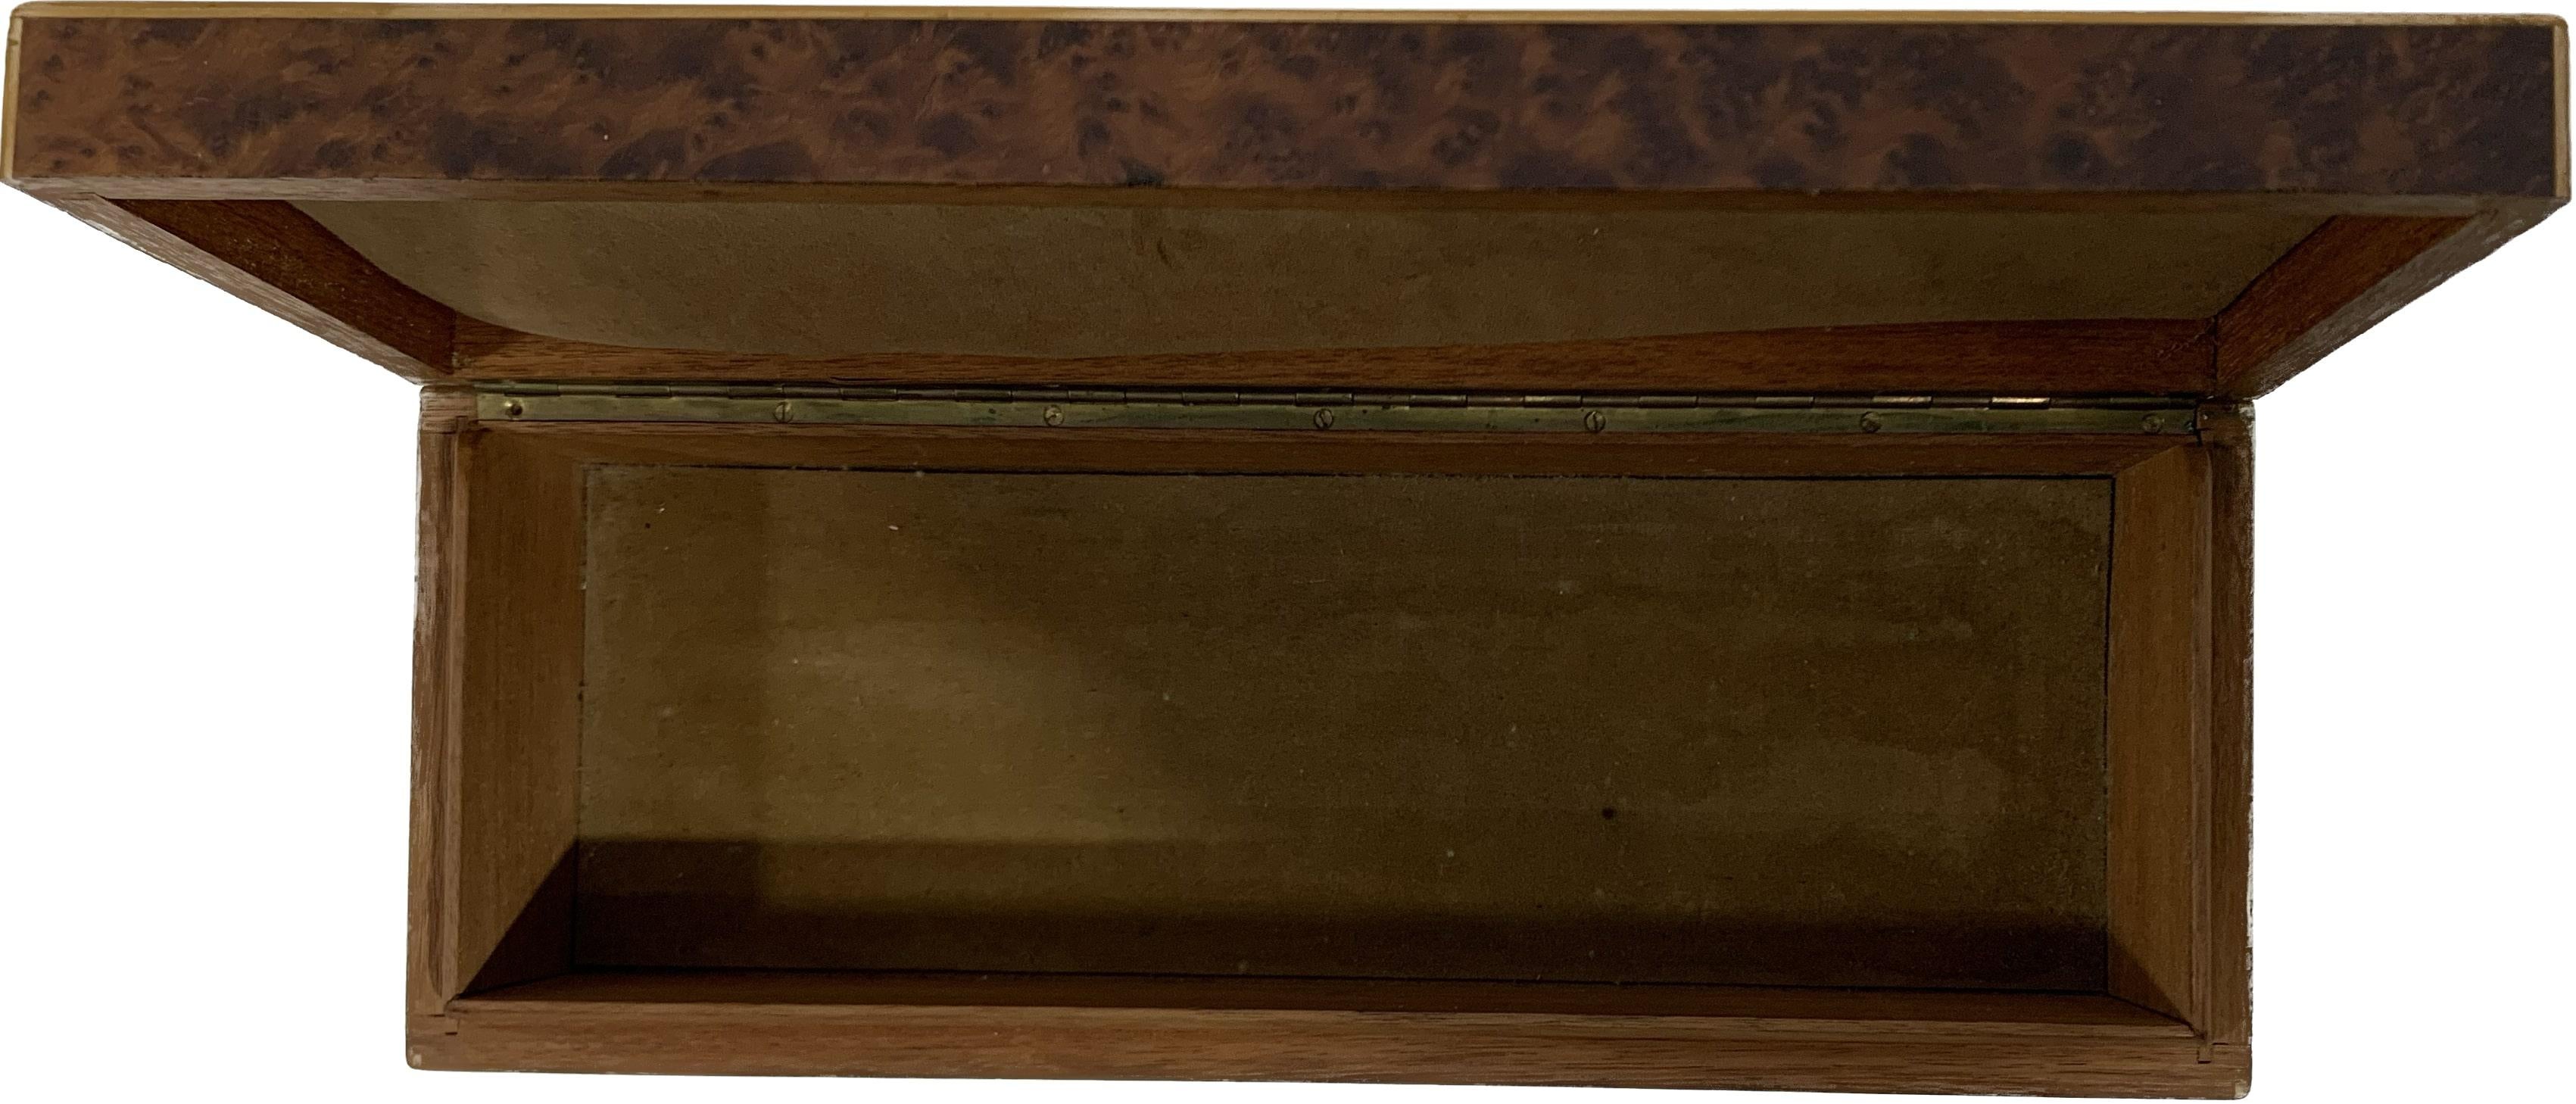 Holzkiste aus der Mitte des 20. Jahrhunderts, direkt aus der Art Déco-Periode und ursprünglich in Europa, in Frankreich, hergestellt. Die verwendete Technik ist die Intarsienarbeit mit mehrfarbigen Intarsien aus verschiedenen Hölzern wie Palisander,